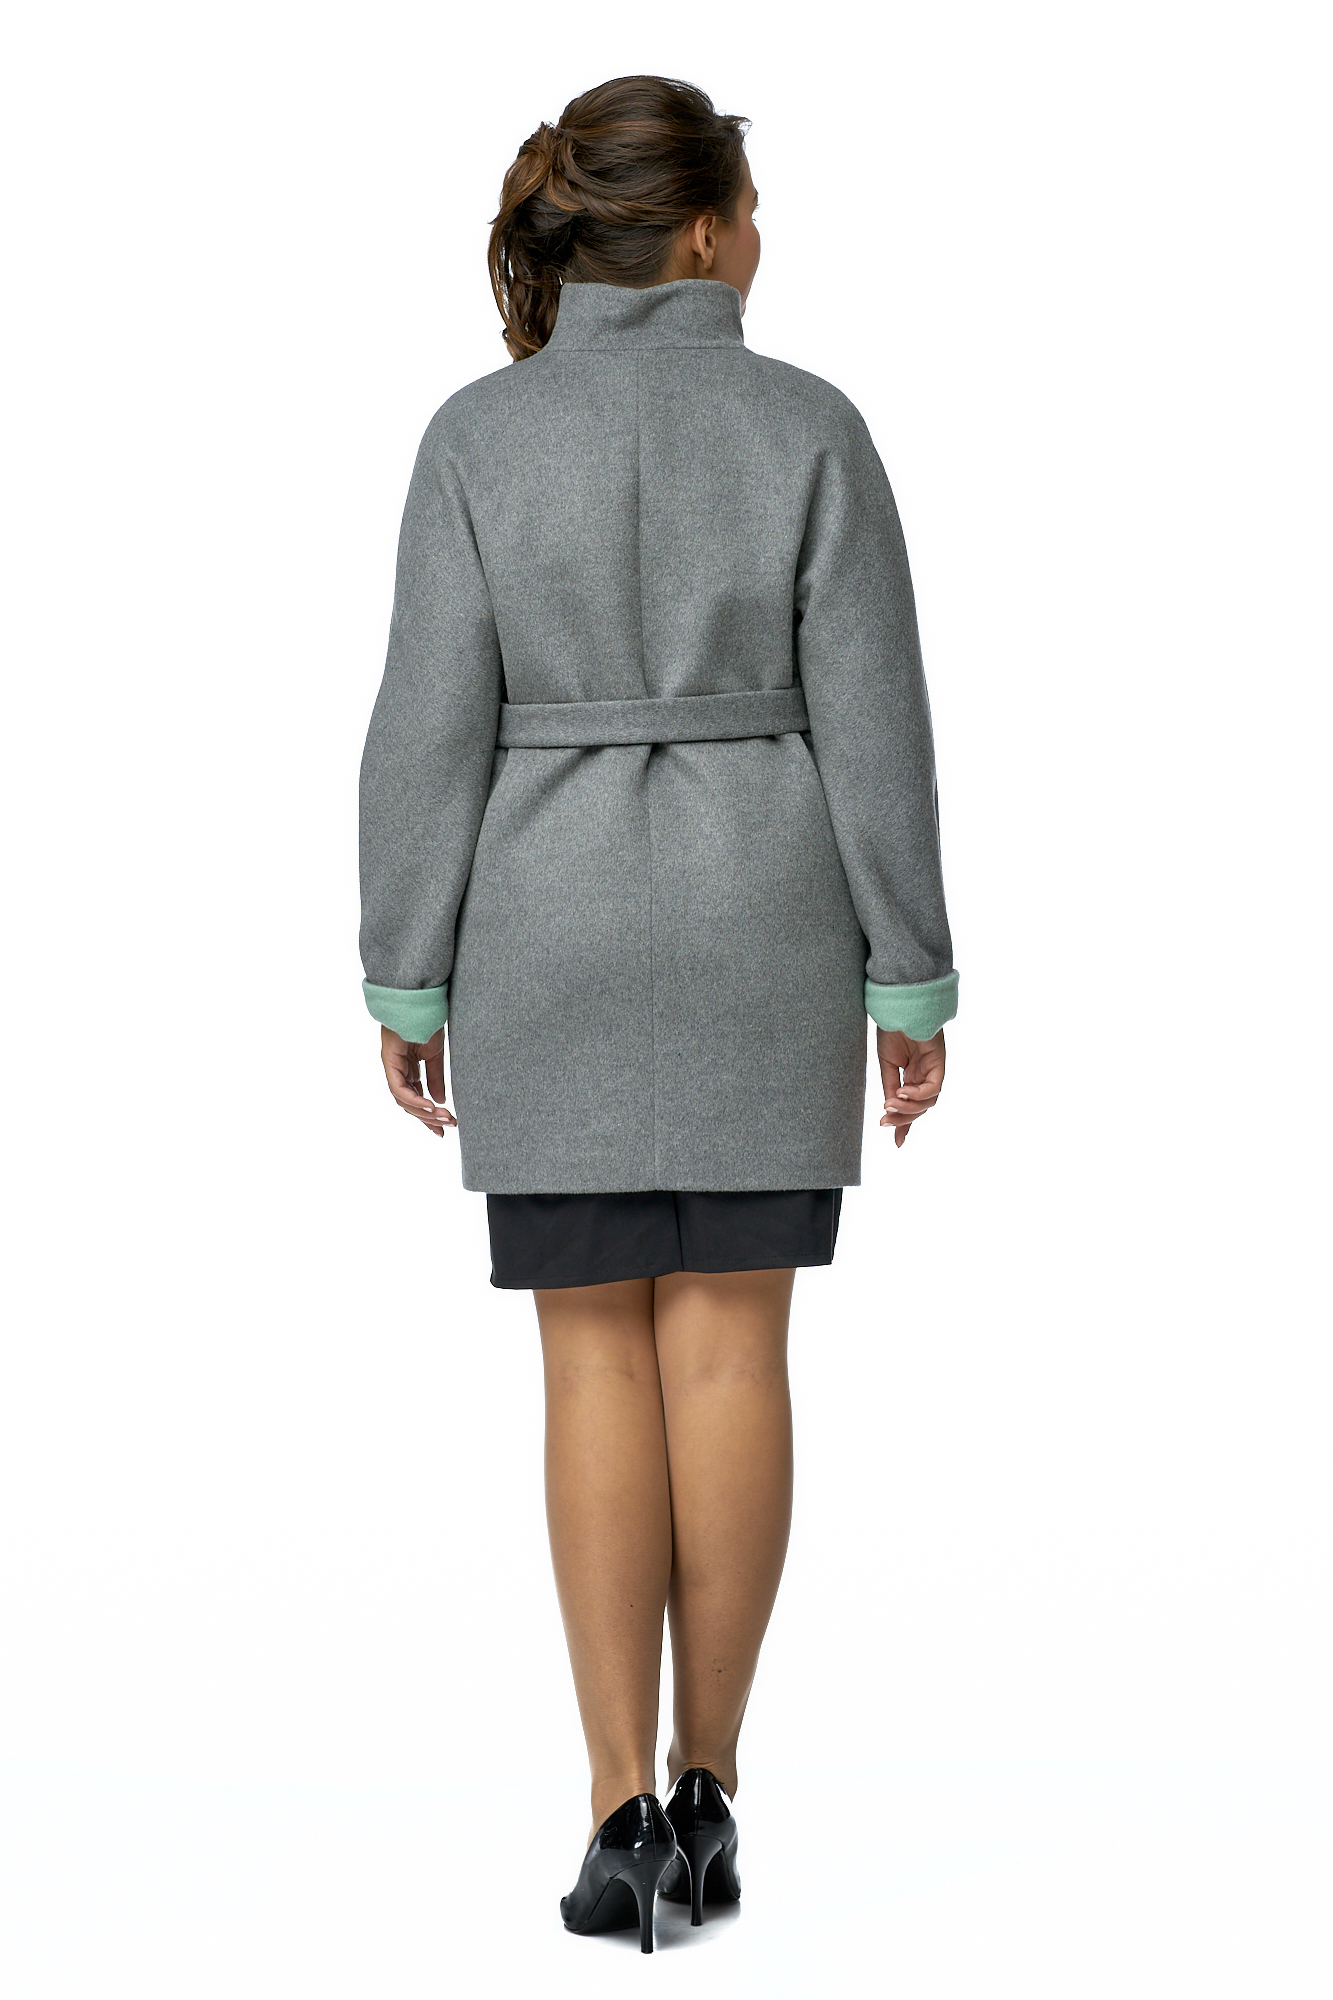 Женское пальто из текстиля с воротником 8001107-2